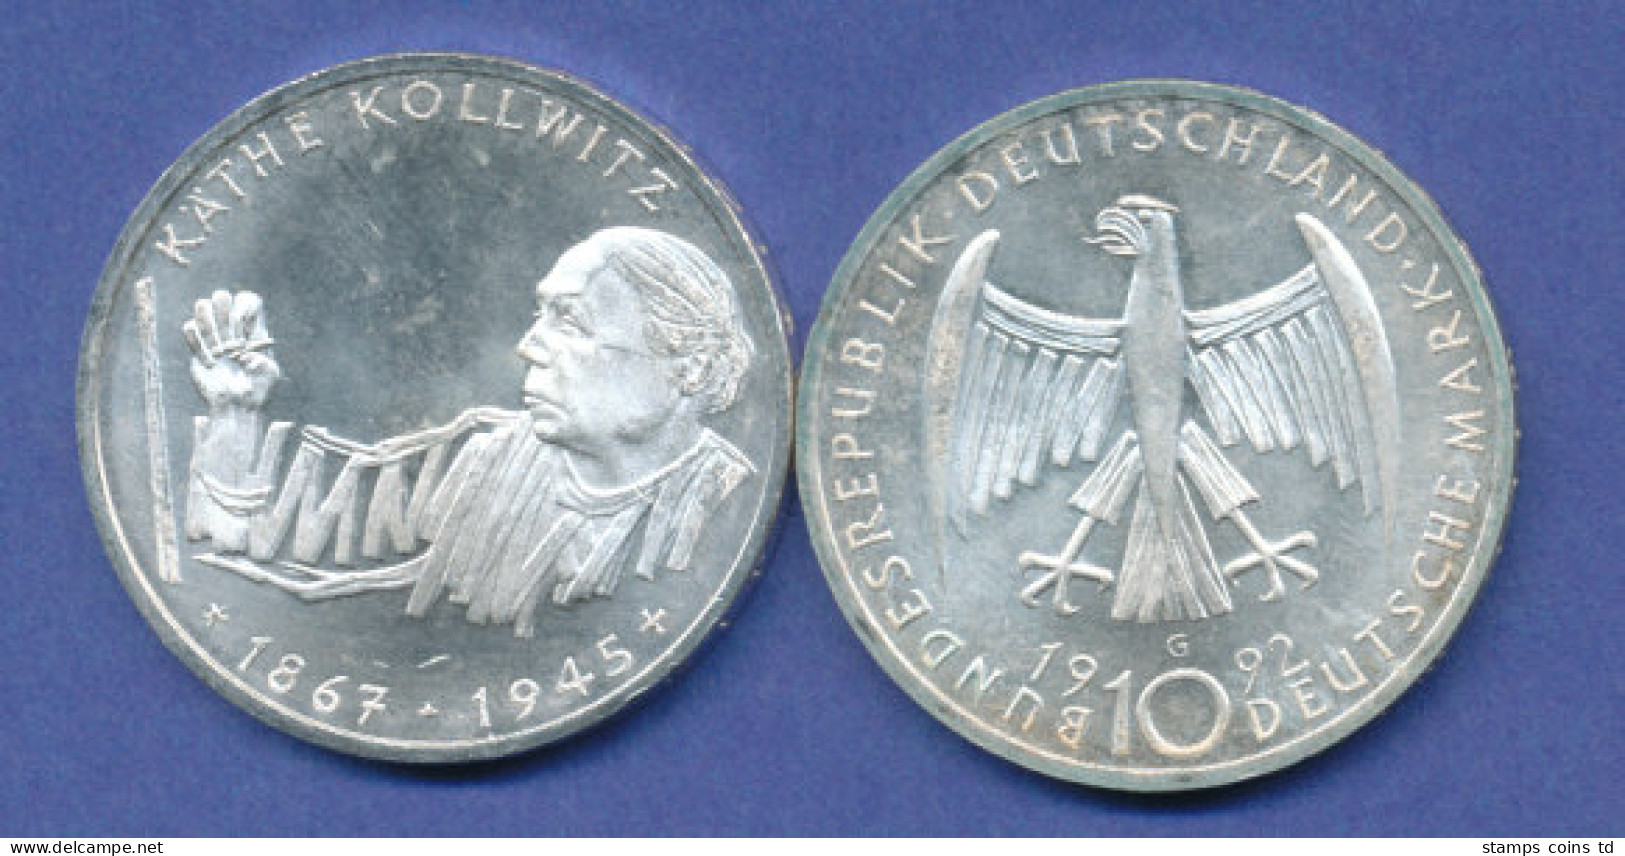 Bundesrepublik 10DM Silber-Gedenkmünze 1992, 125. Geburtstag Käthe Kollwitz - 10 Mark